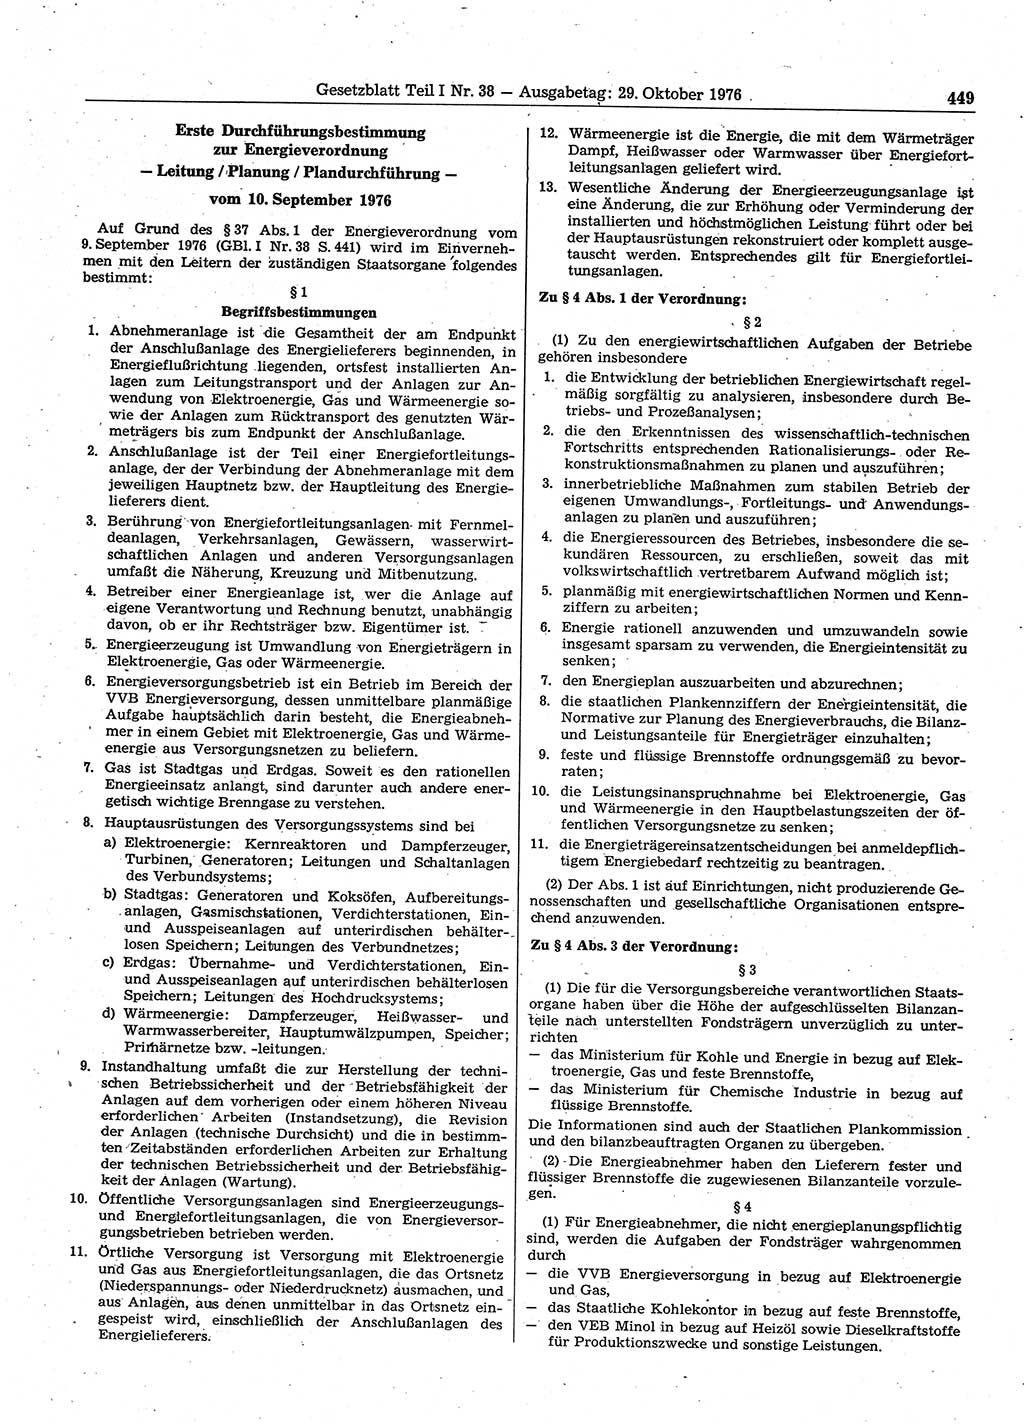 Gesetzblatt (GBl.) der Deutschen Demokratischen Republik (DDR) Teil Ⅰ 1976, Seite 449 (GBl. DDR Ⅰ 1976, S. 449)